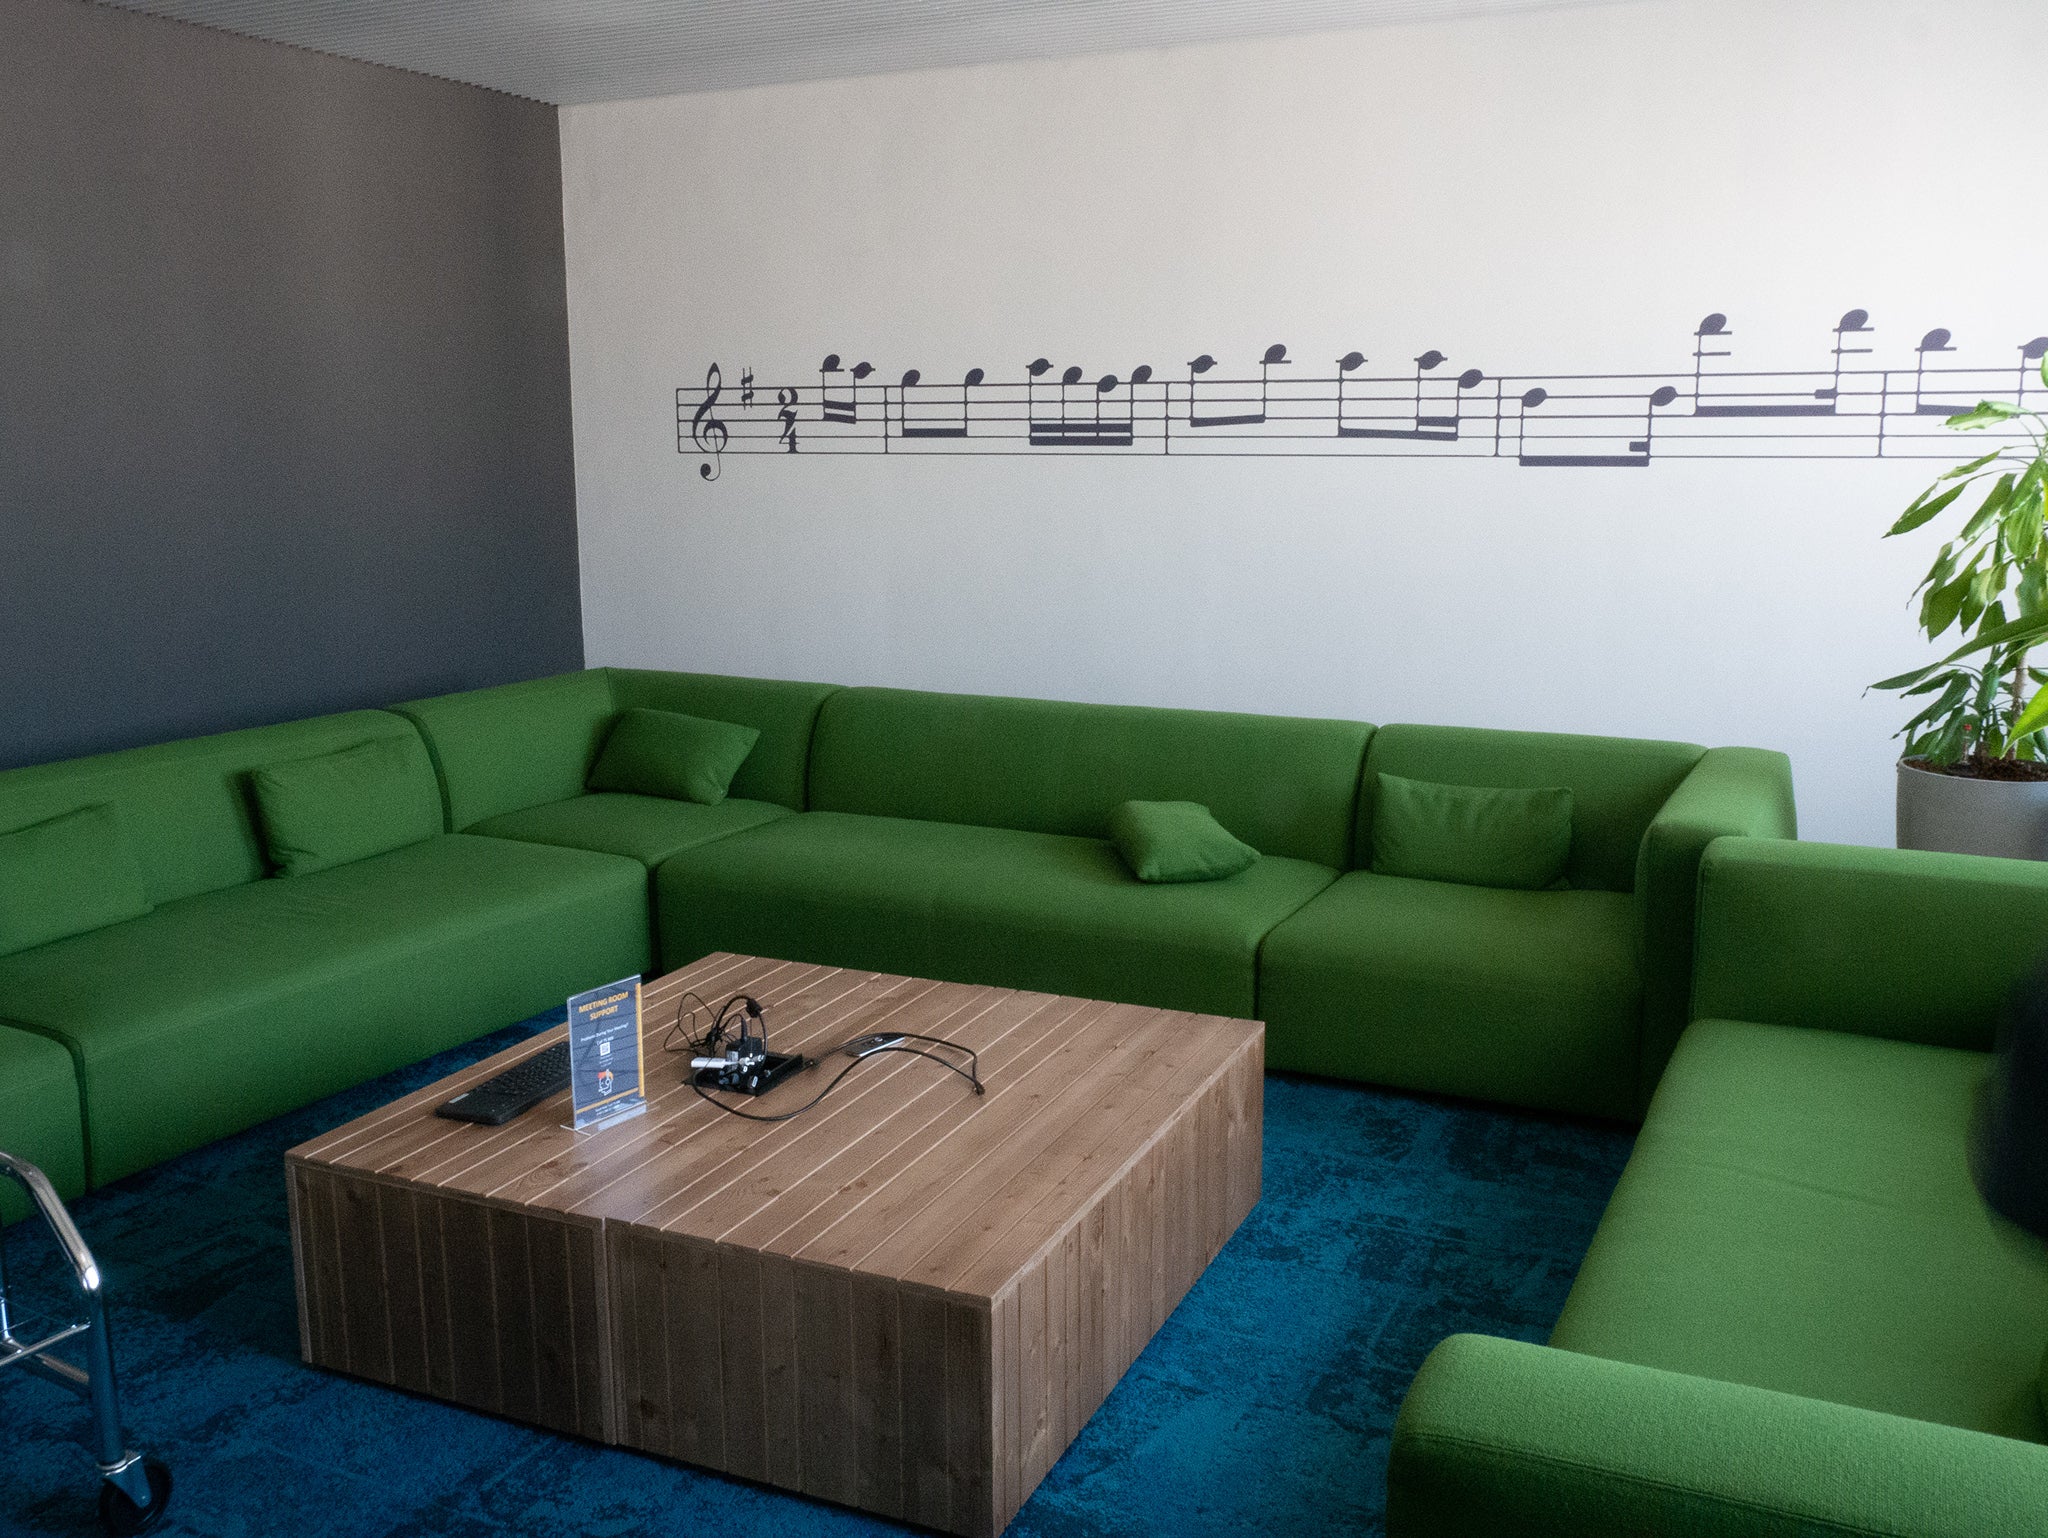 Kreativraum „Mozart“ mit Noten der Papageno-Arie an der Wand